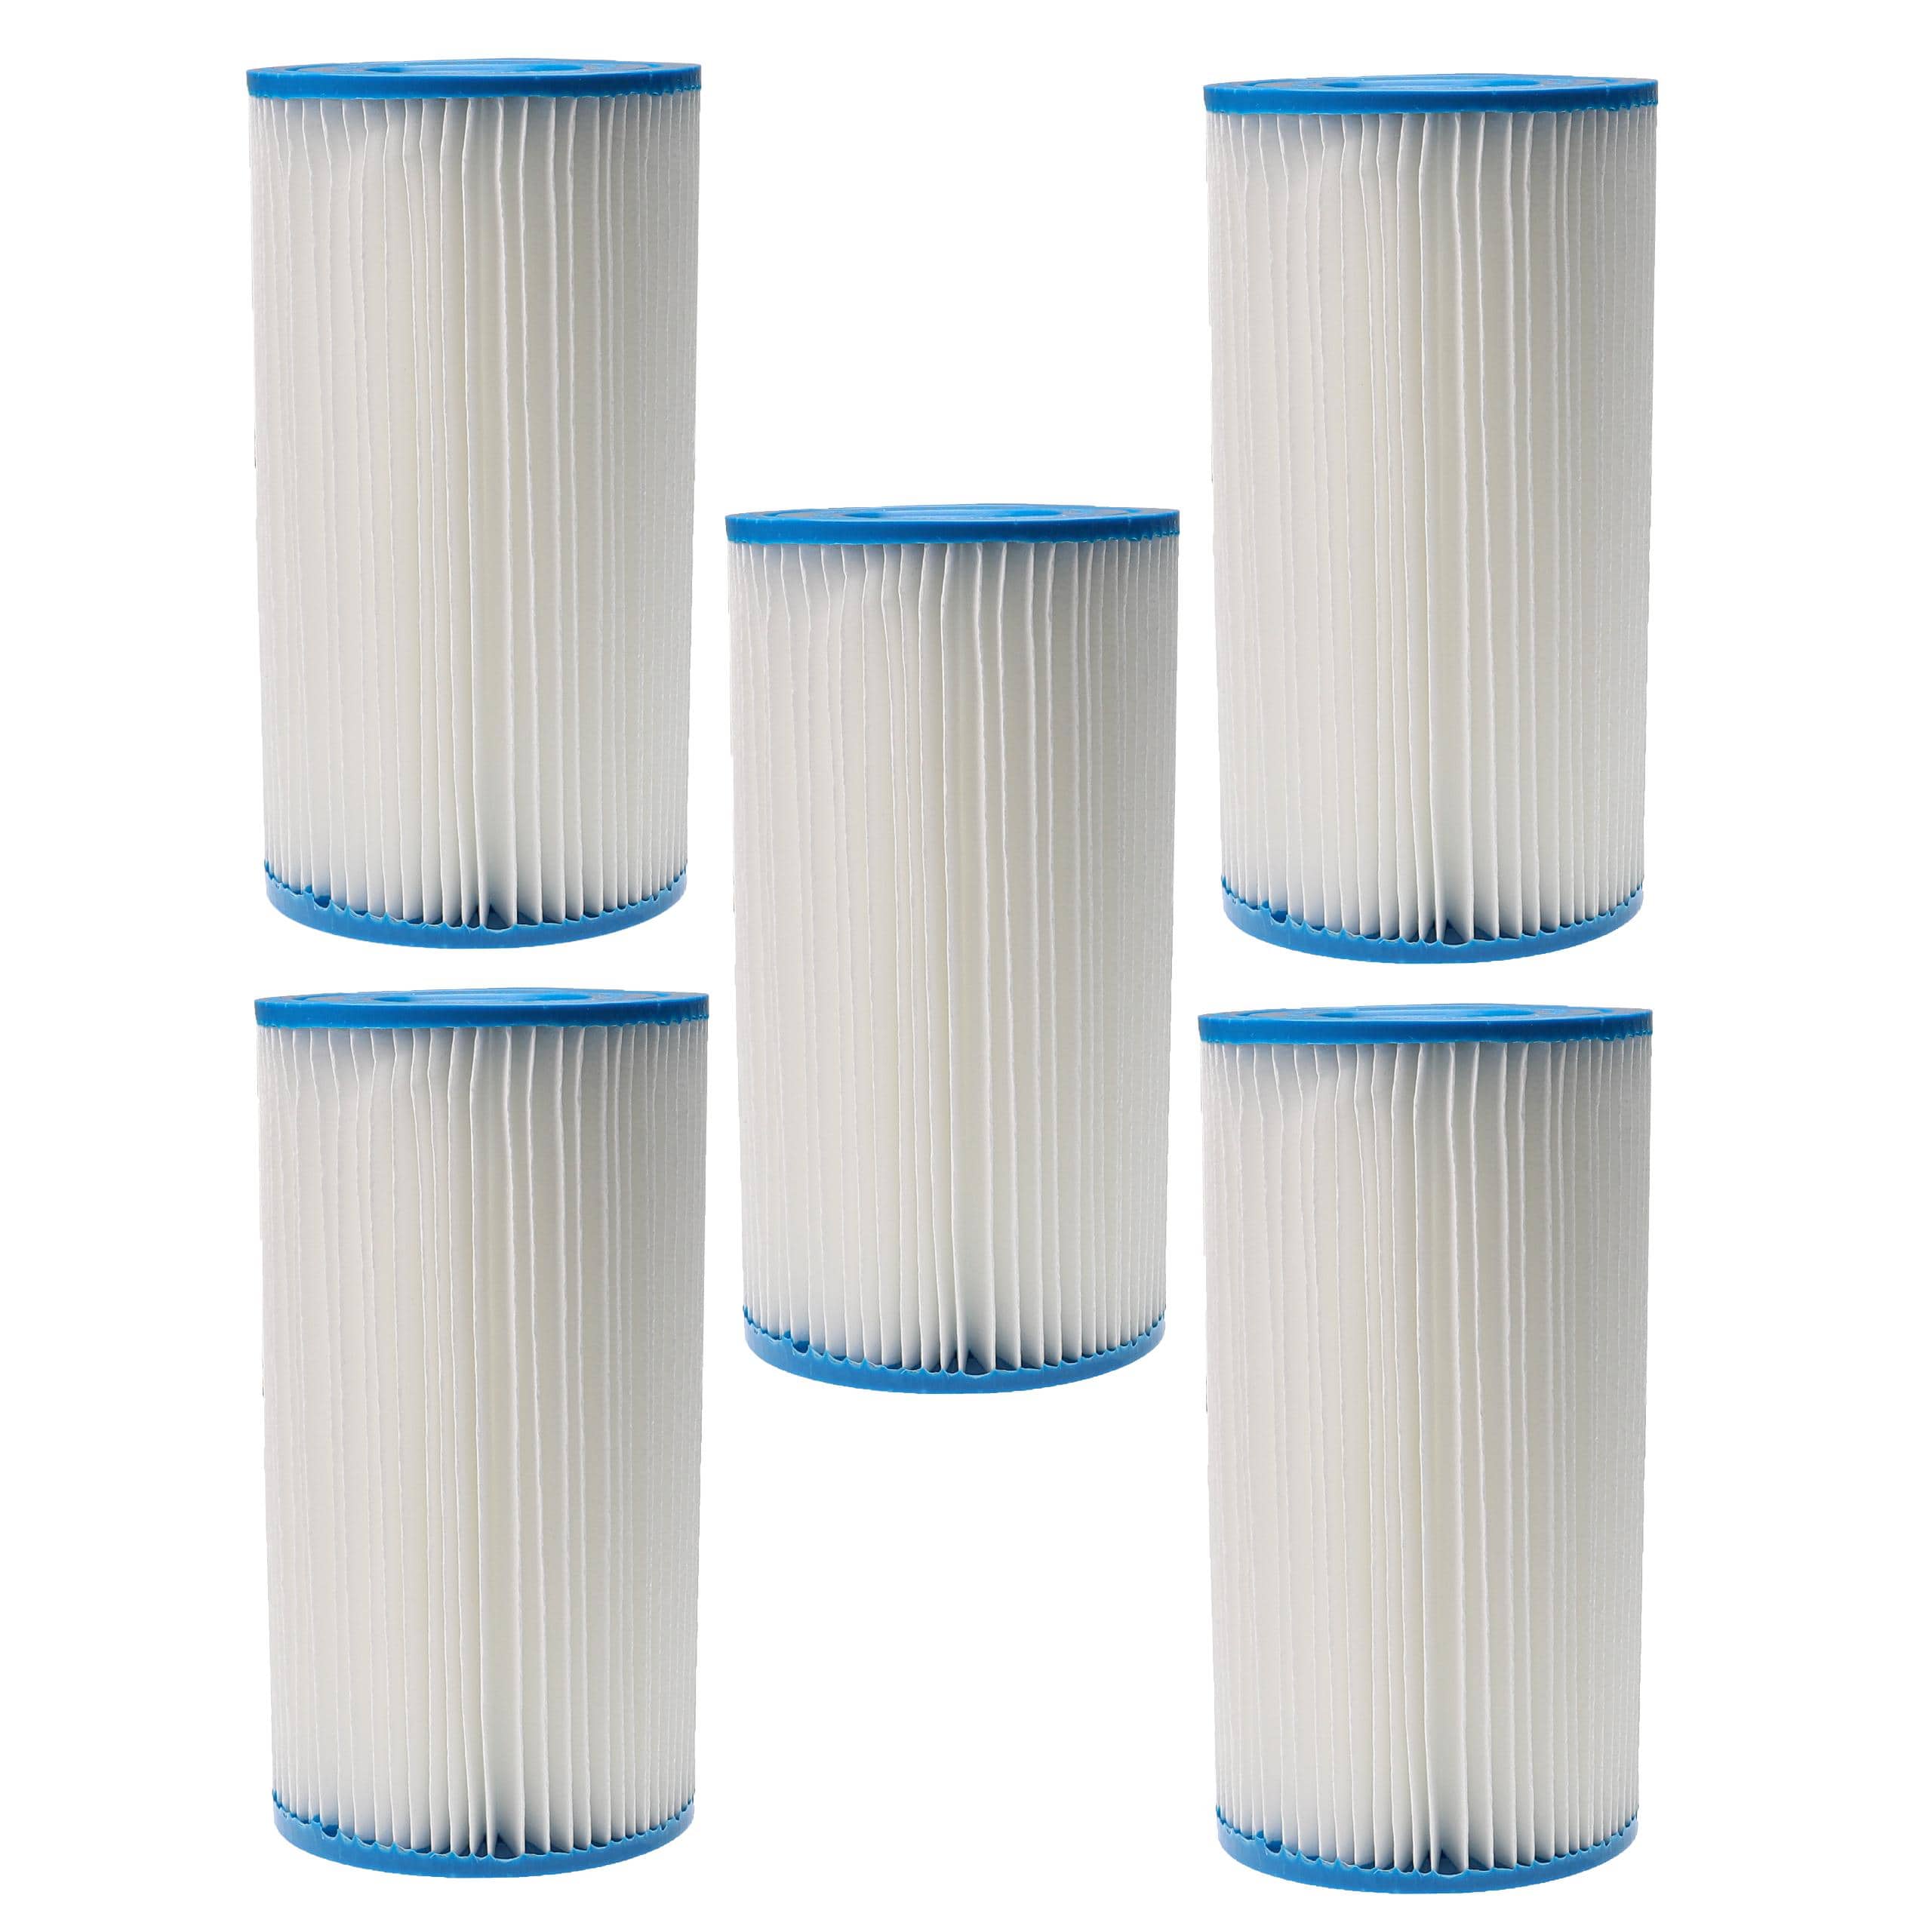 5x Filtro dell'acqua sostituisce Intex filtro tipo A per piscina, pompa filtro - cartuccia filtrante